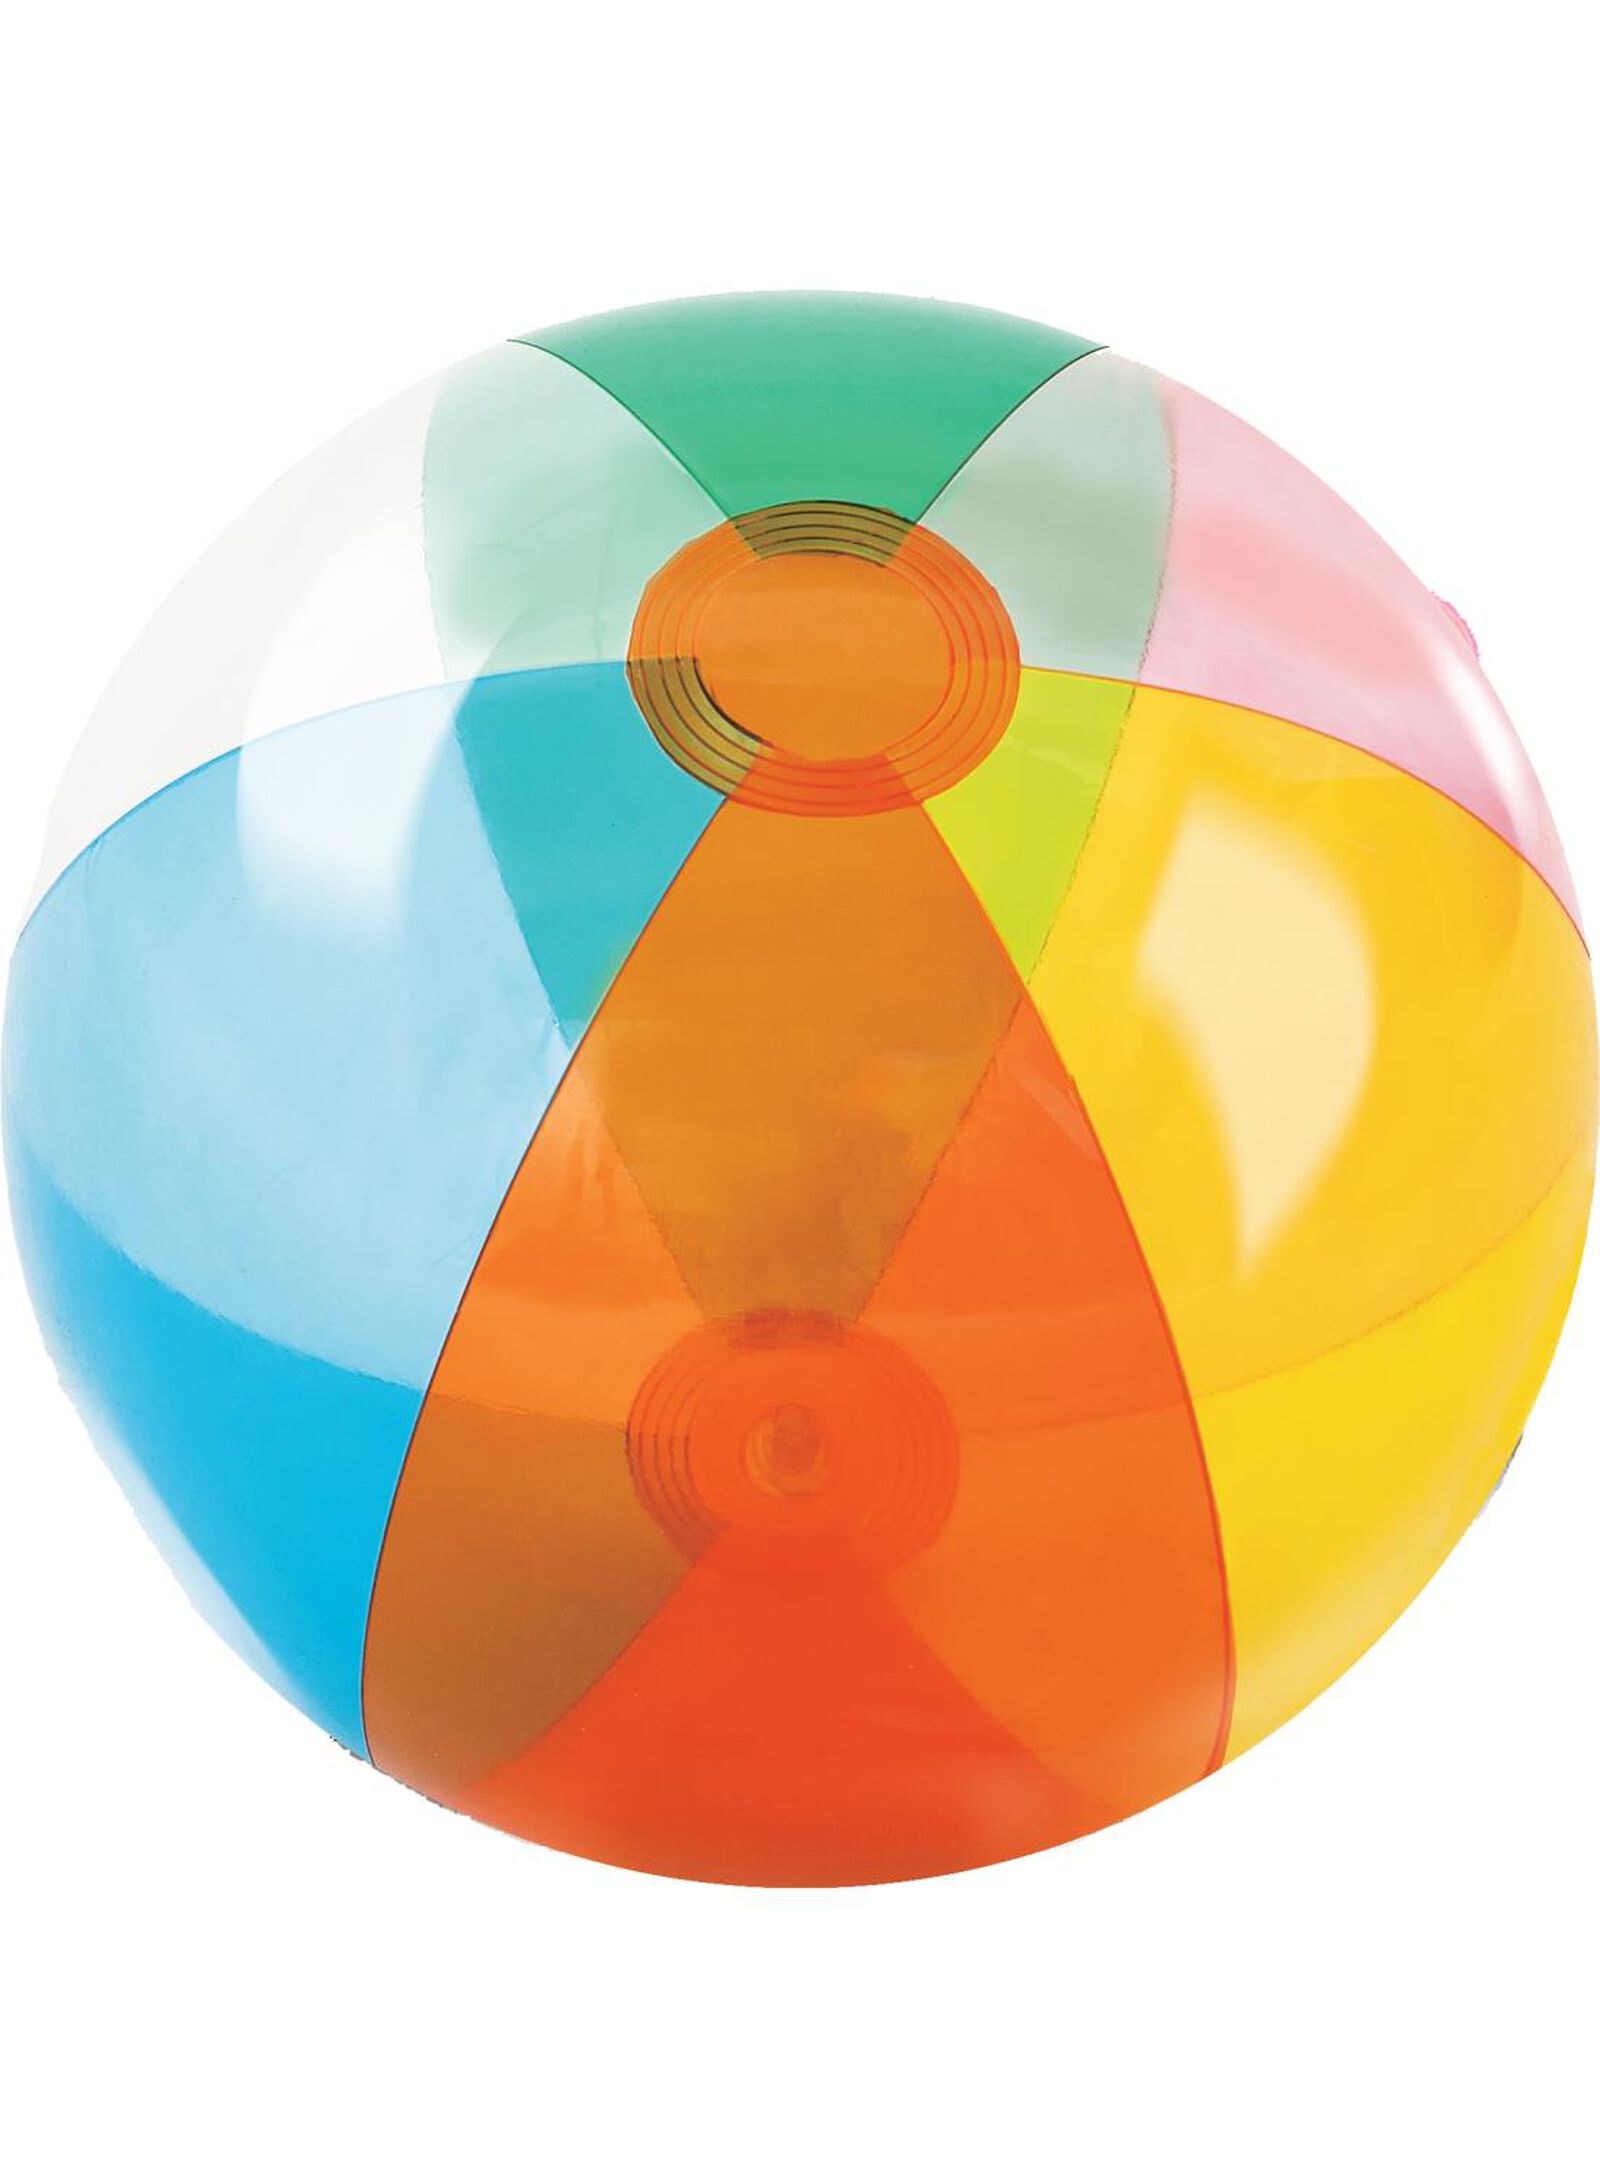 Ballon de plage géant Retro Fashion 122 cm - Ballon enfant - Achat